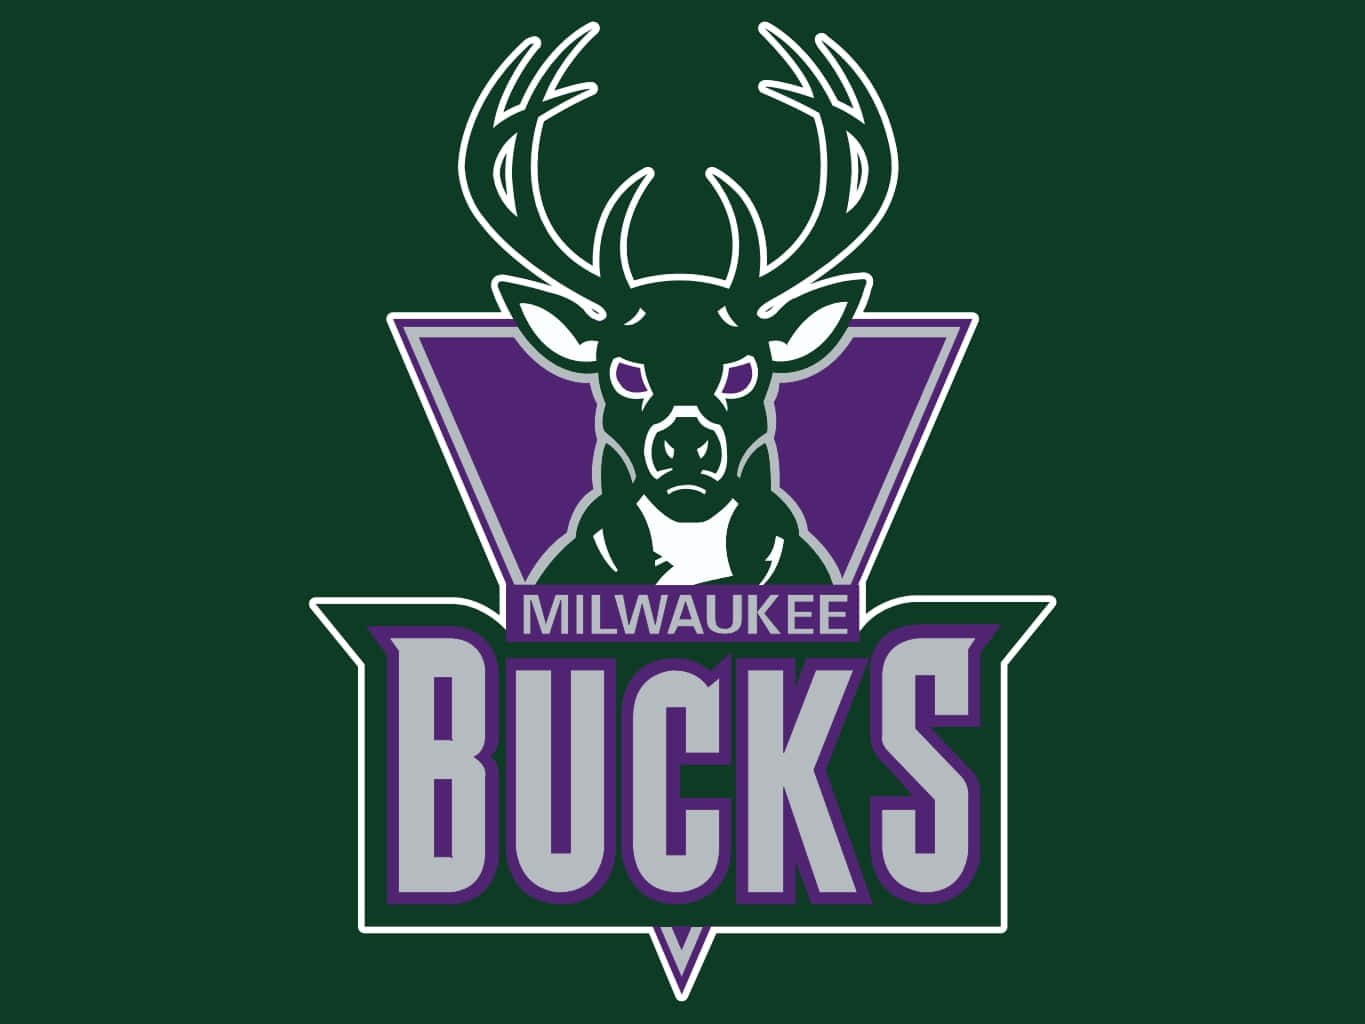 Logoet for Milwaukee Bucks, som repræsenterer byen Milwaukee. Wallpaper